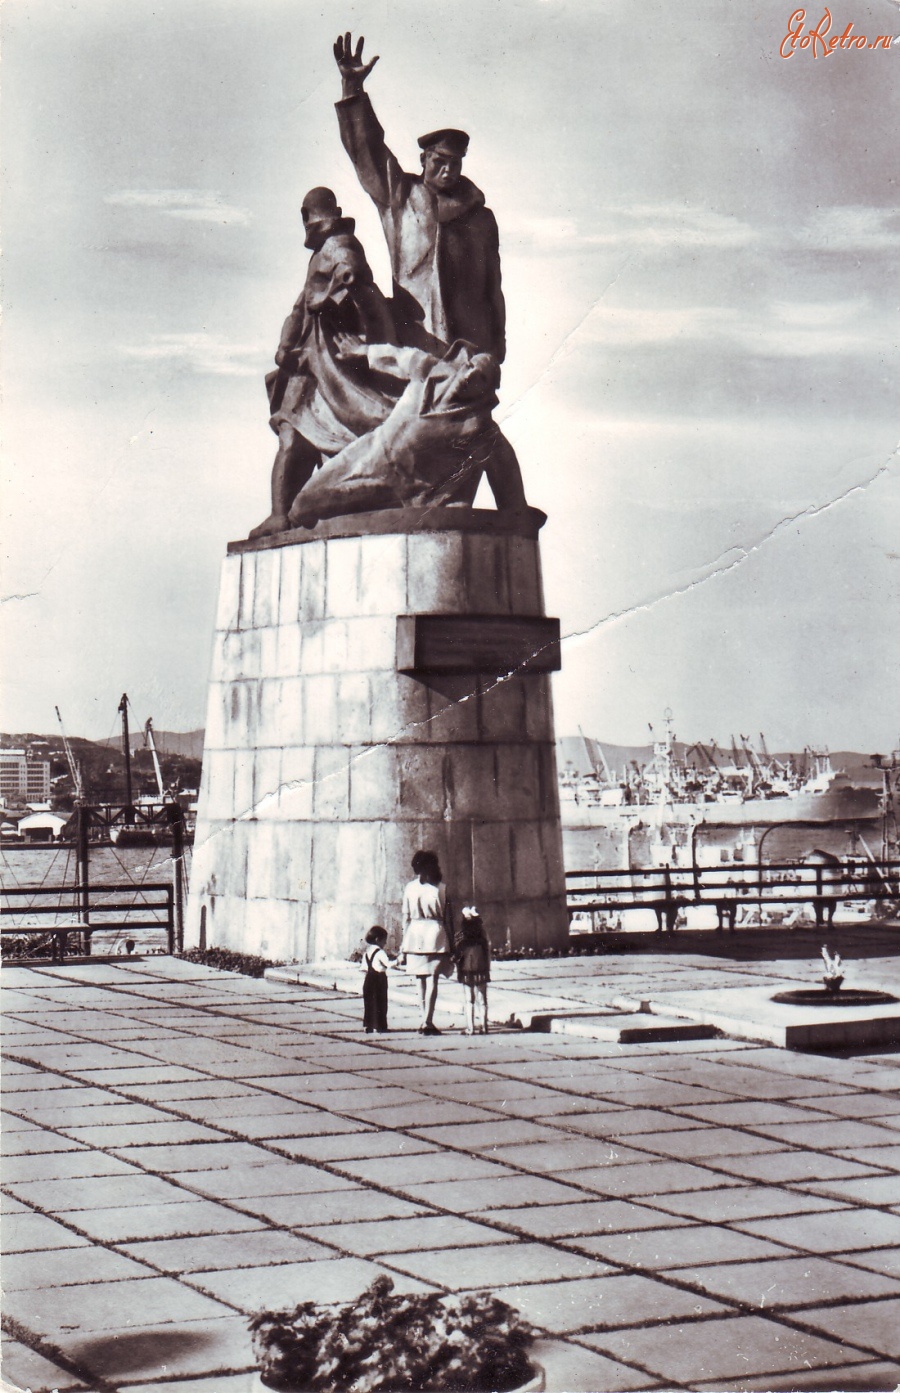 Владивосток - Памятник приморским морякам, погибшим во время Великой Отечественной войны 1941-45 гг